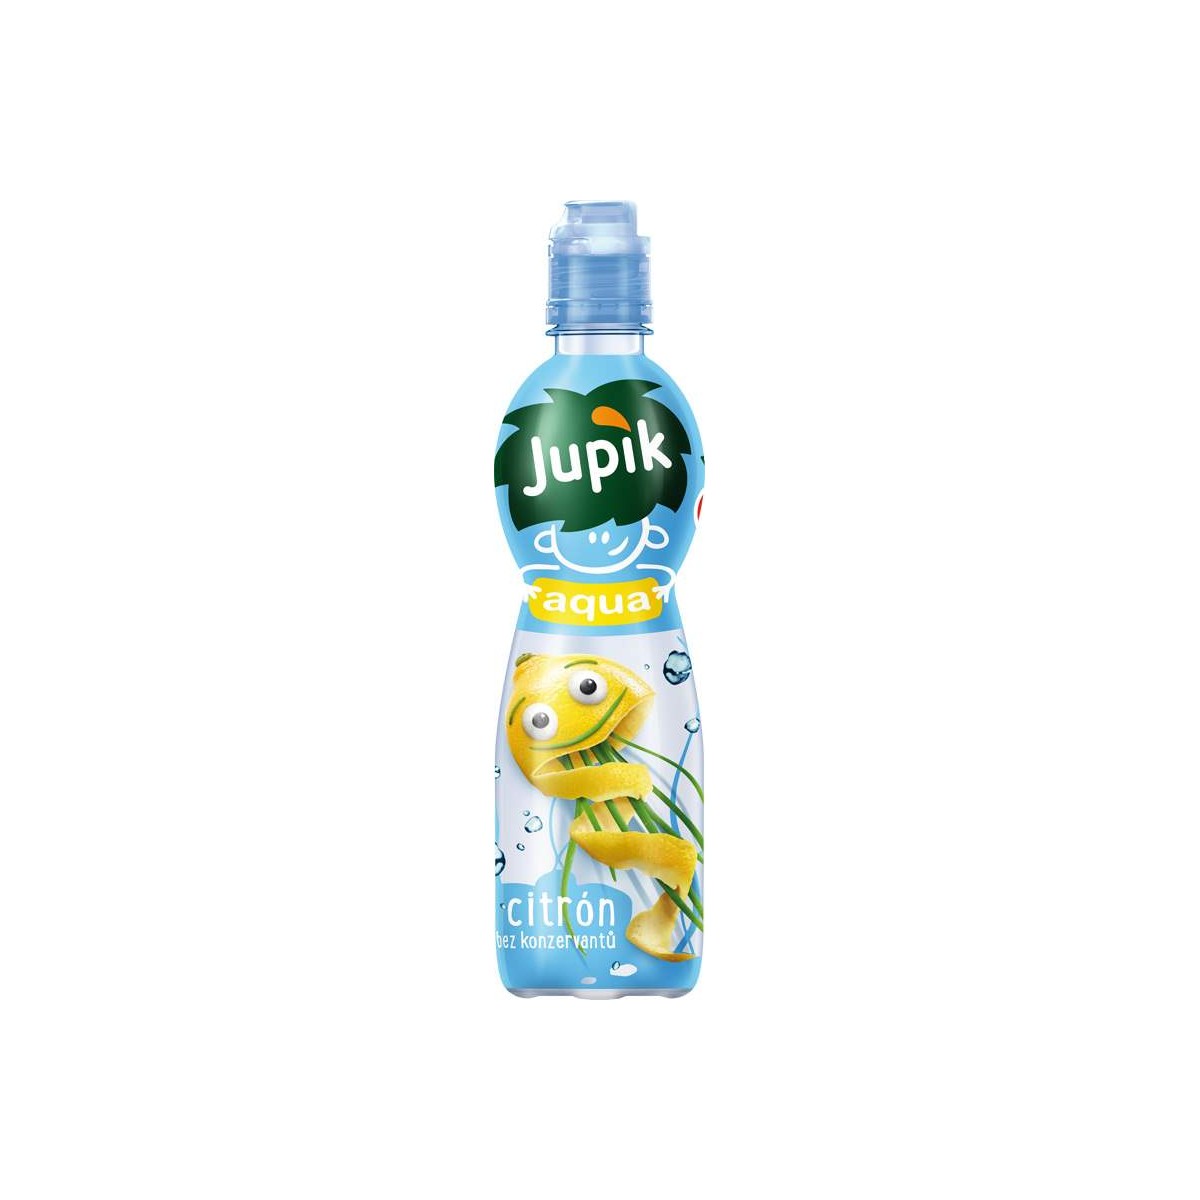 Jupík Aqua citron 0,5l - PET